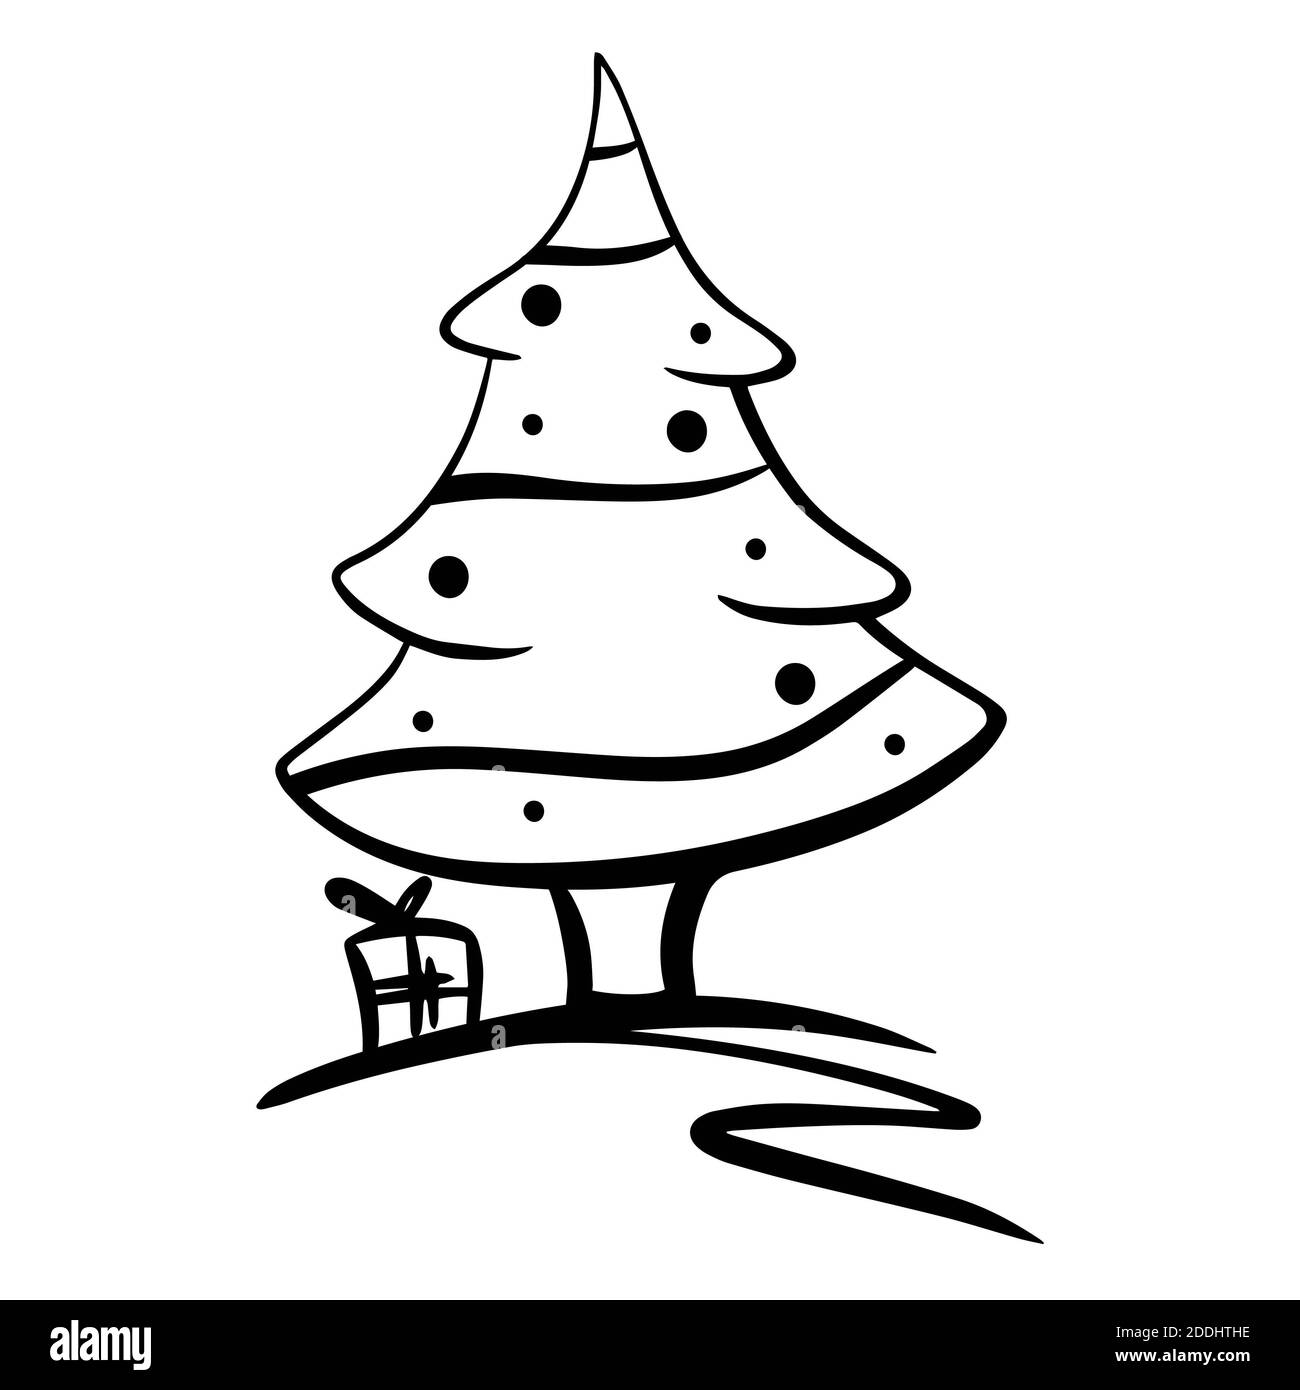 Weihnachtsbäume Symbol, Vektor einfaches Design. Schwarzes Symbol der weihnachtsbaum Linie mit Geschenken isoliert auf weißem Hintergrund Stockfoto